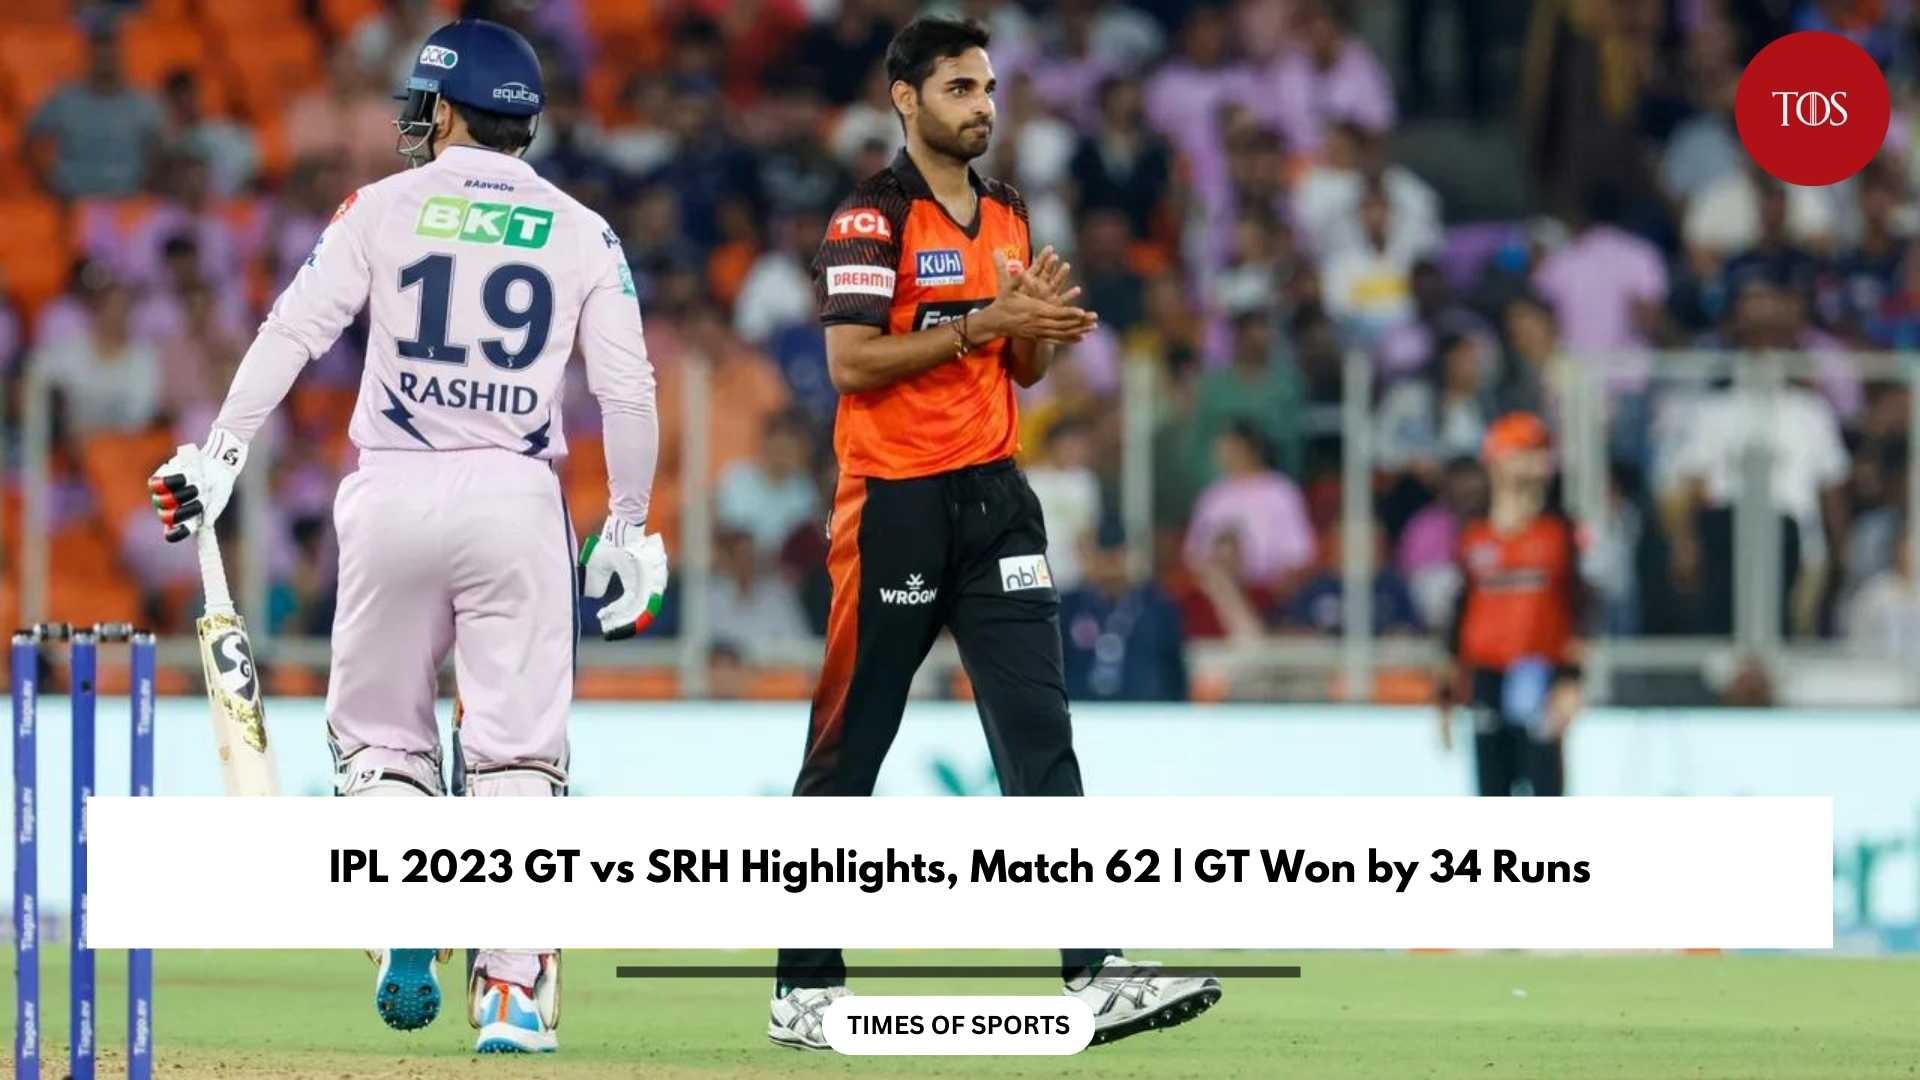 IPL 2023 GT vs SRH Highlights